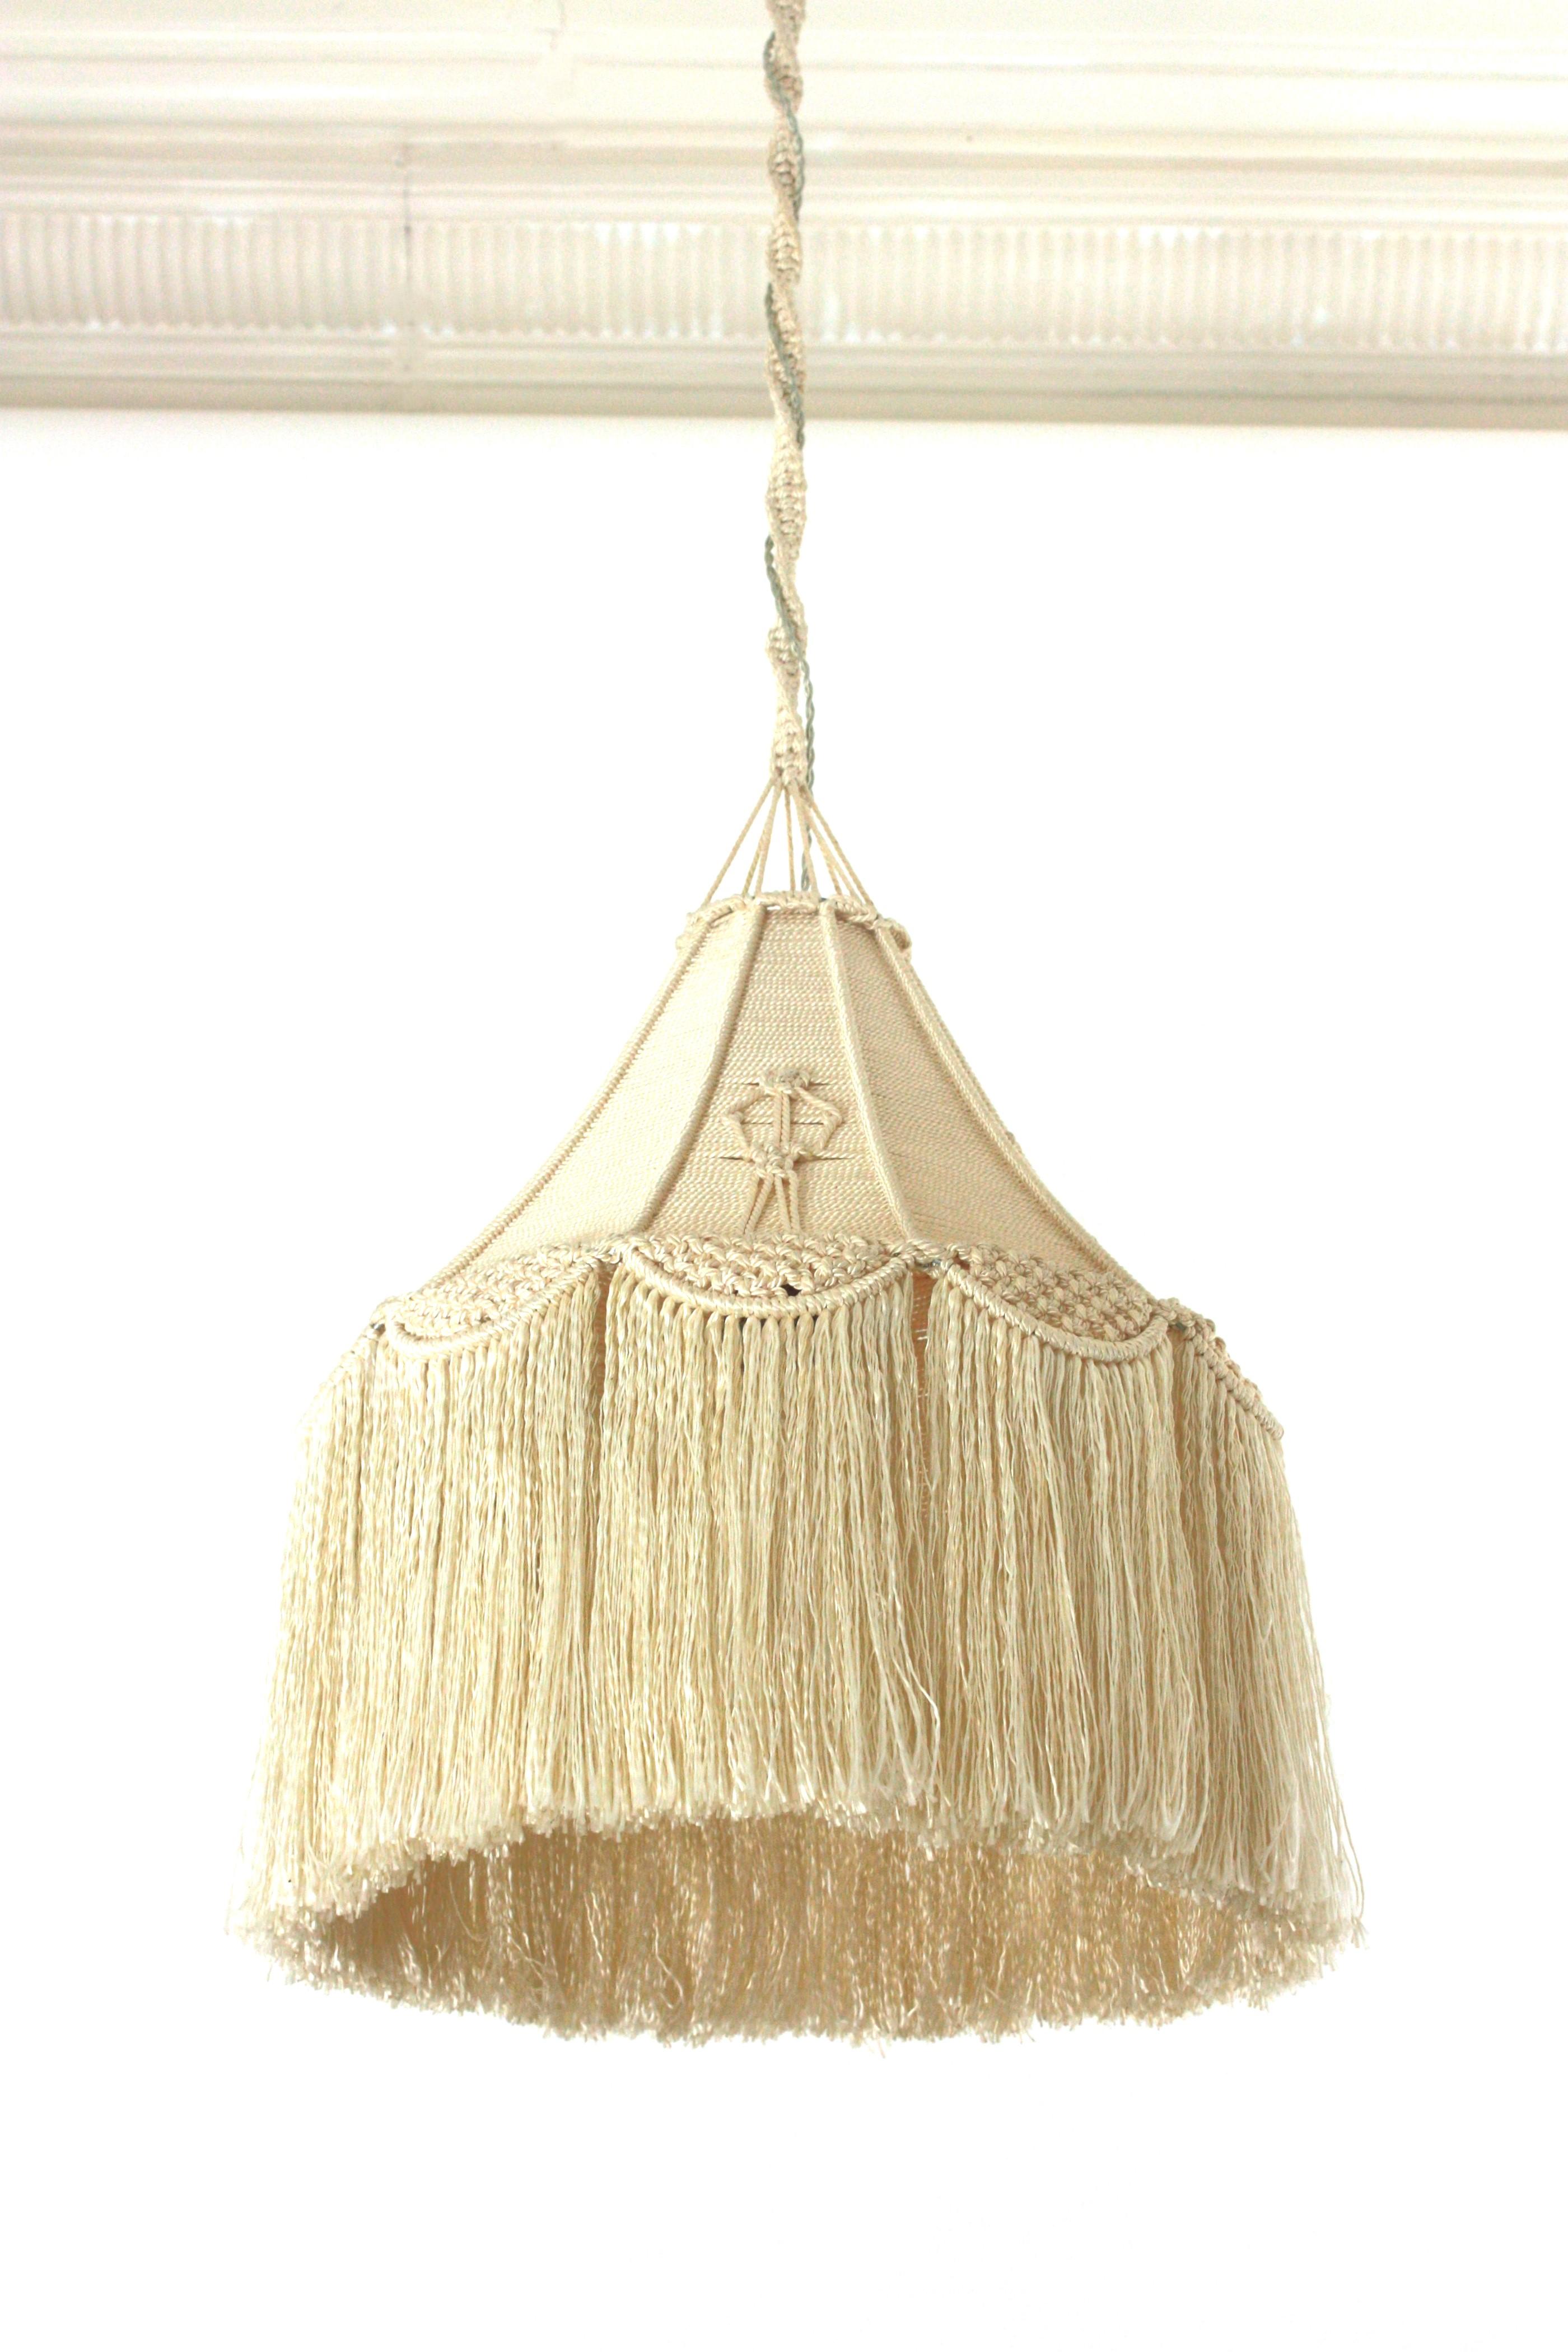 Suspension espagnole en macramé noué à la main - Lampe suspendue au plafond
Magnifique lanterne / pendentif en forme de cône en fibre macramé, fait à la main, Espagne, années 1960-1970.
Cette lampe accrocheuse présente un abat-jour conique avec des